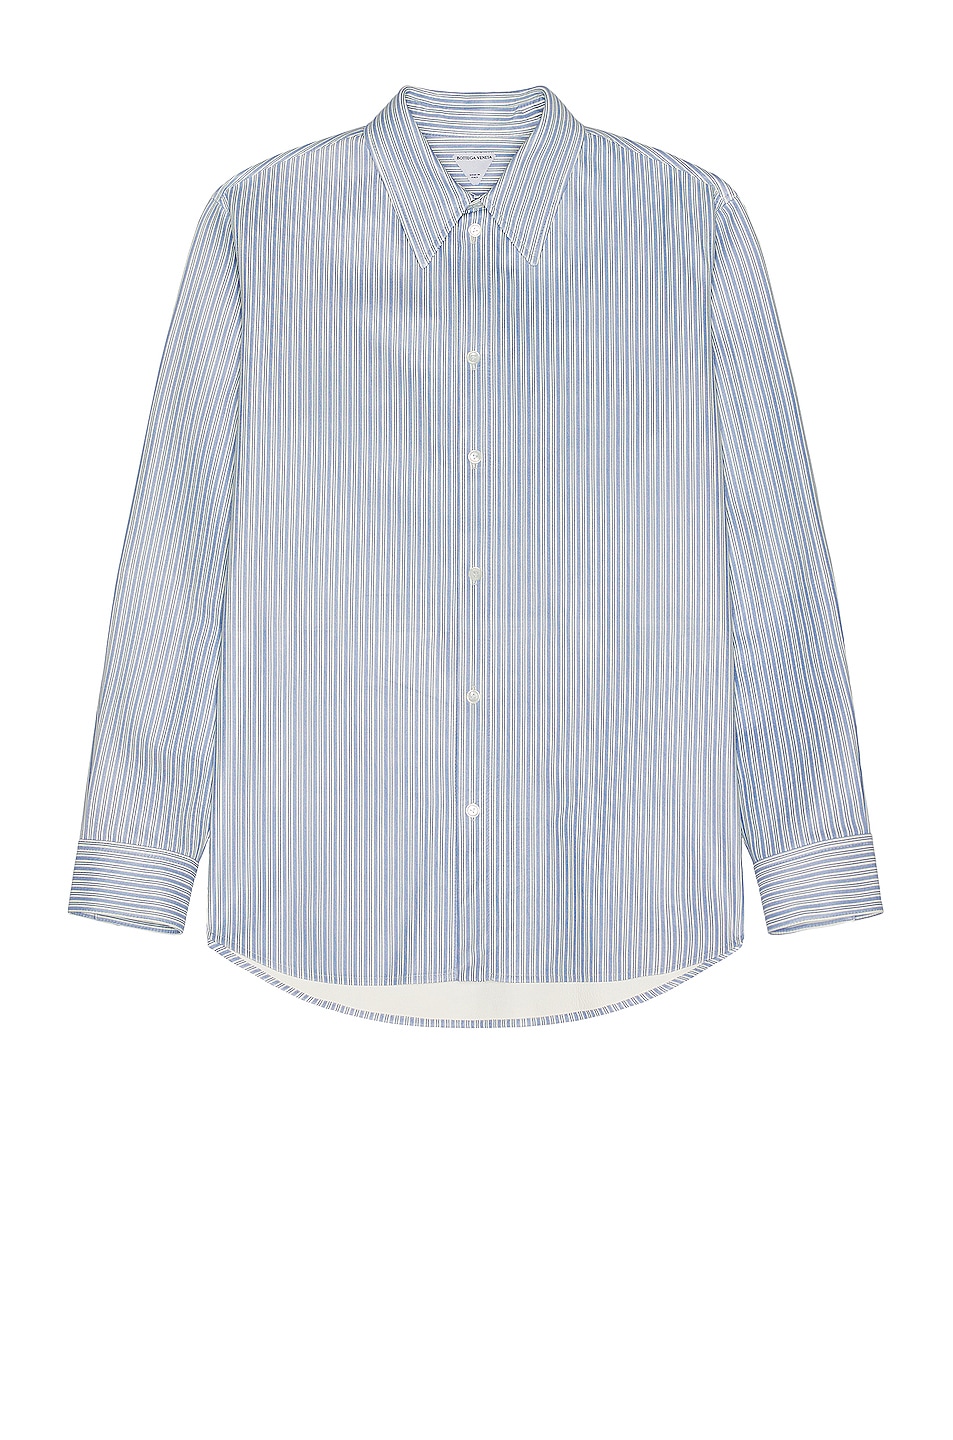 Image 1 of Bottega Veneta Multi Stripes Leather Shirt in Light Blue & White